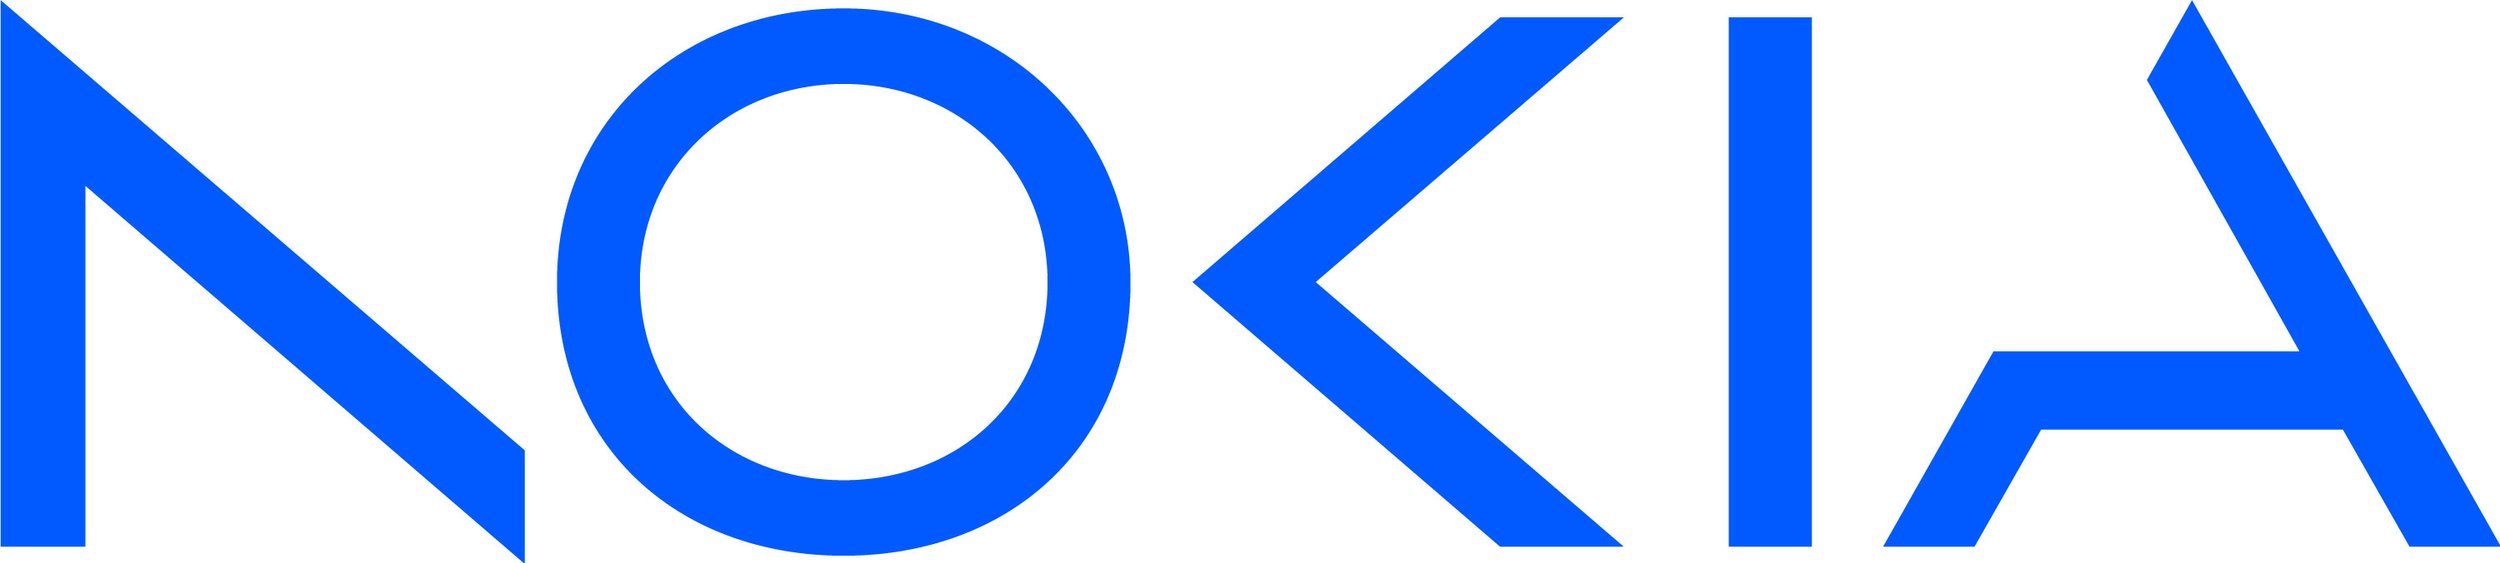 Nokia logo RGB-Bright blue_HR.jpg